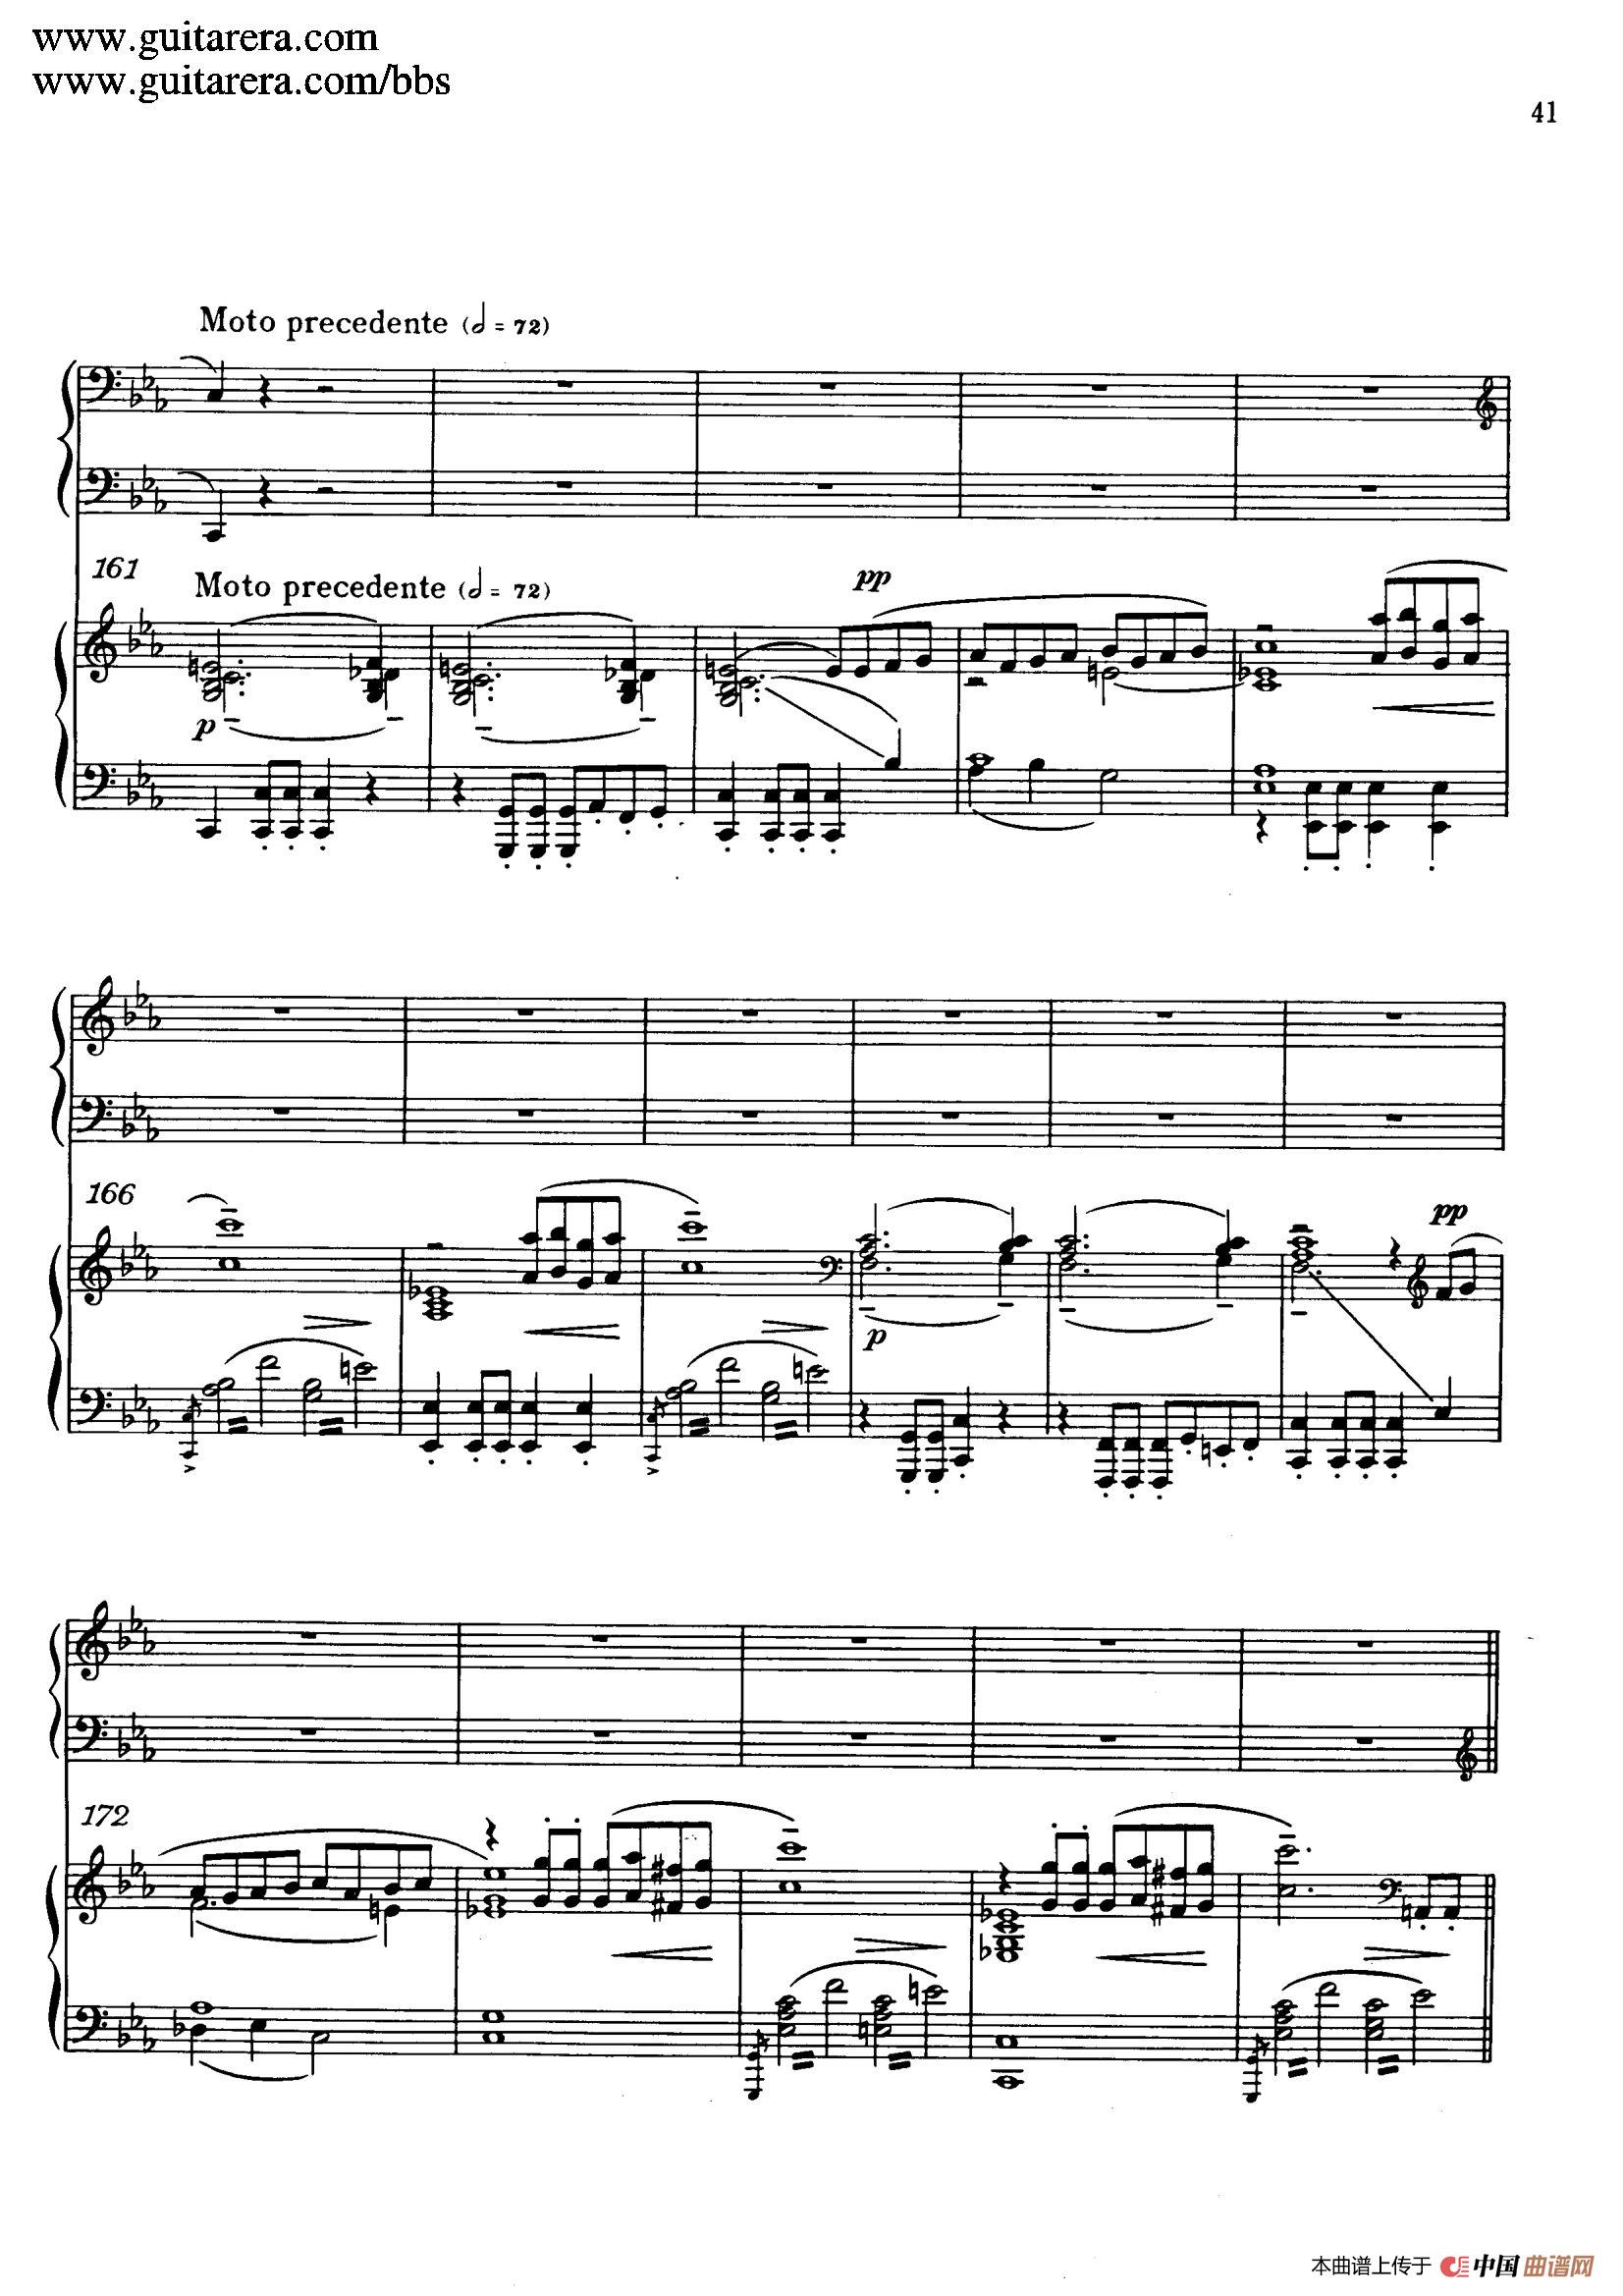 《c小调第二钢琴协奏曲 Op.18》钢琴曲谱图分享